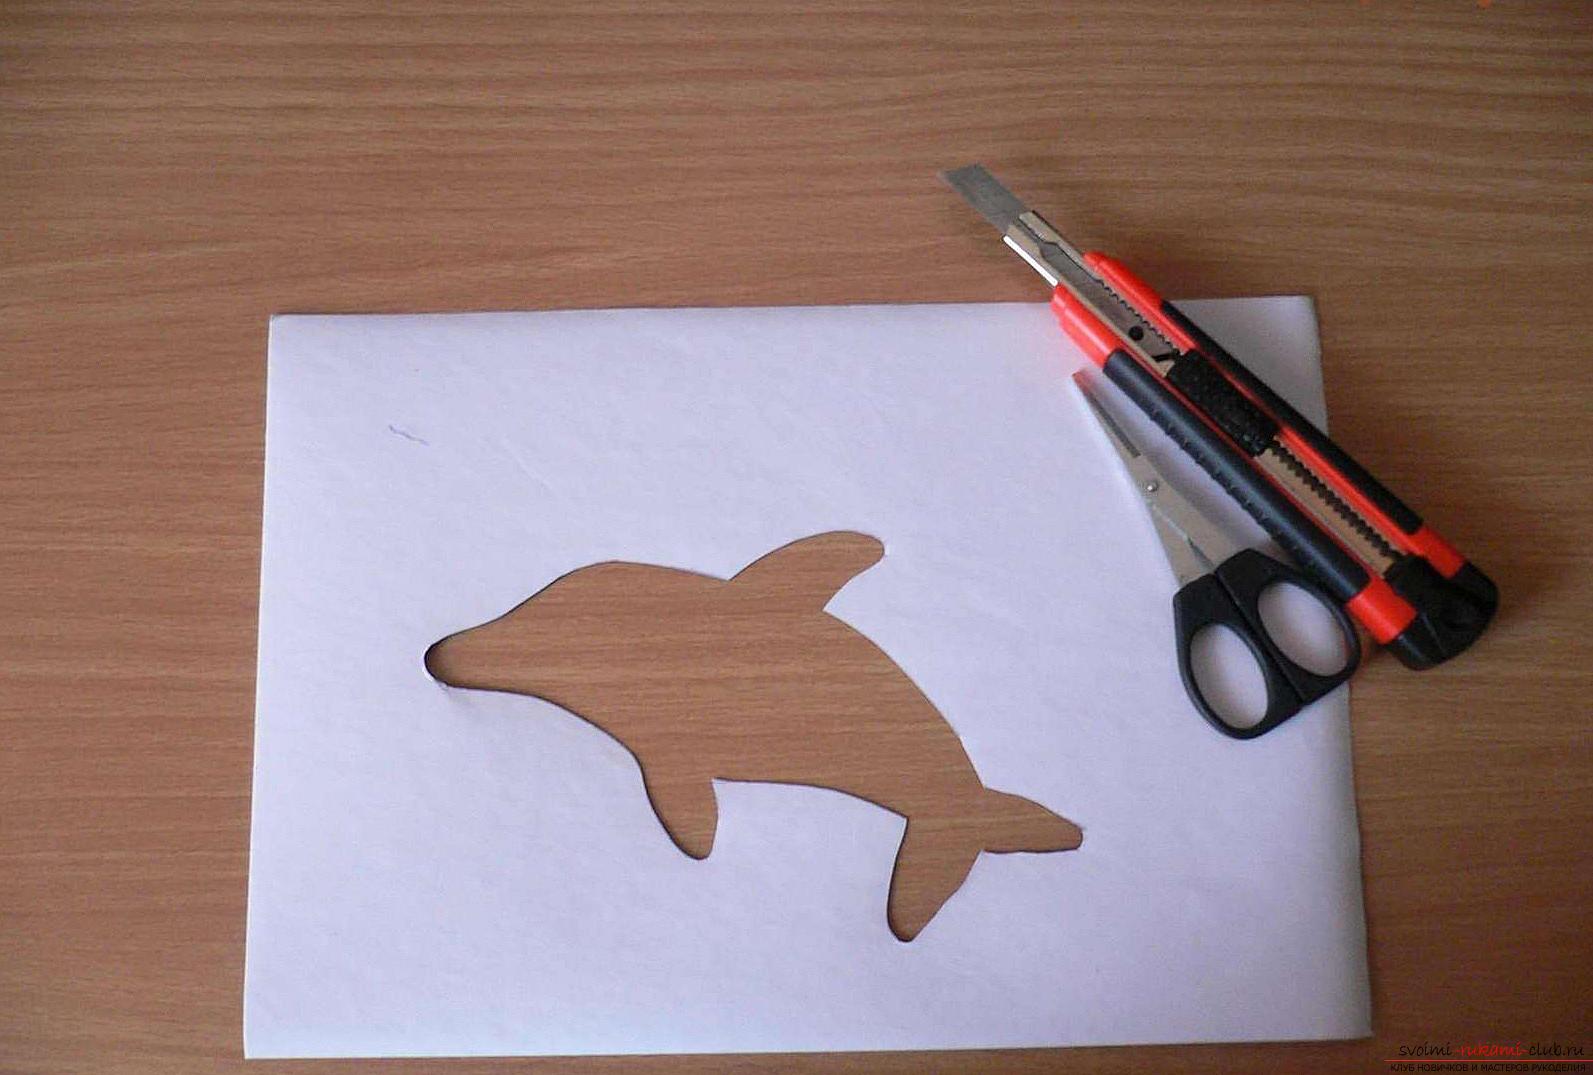 Как сделать картинку с дельфином в технике айрис фолдинг, подробная инструкция с шаблоном, фото и описанием работы